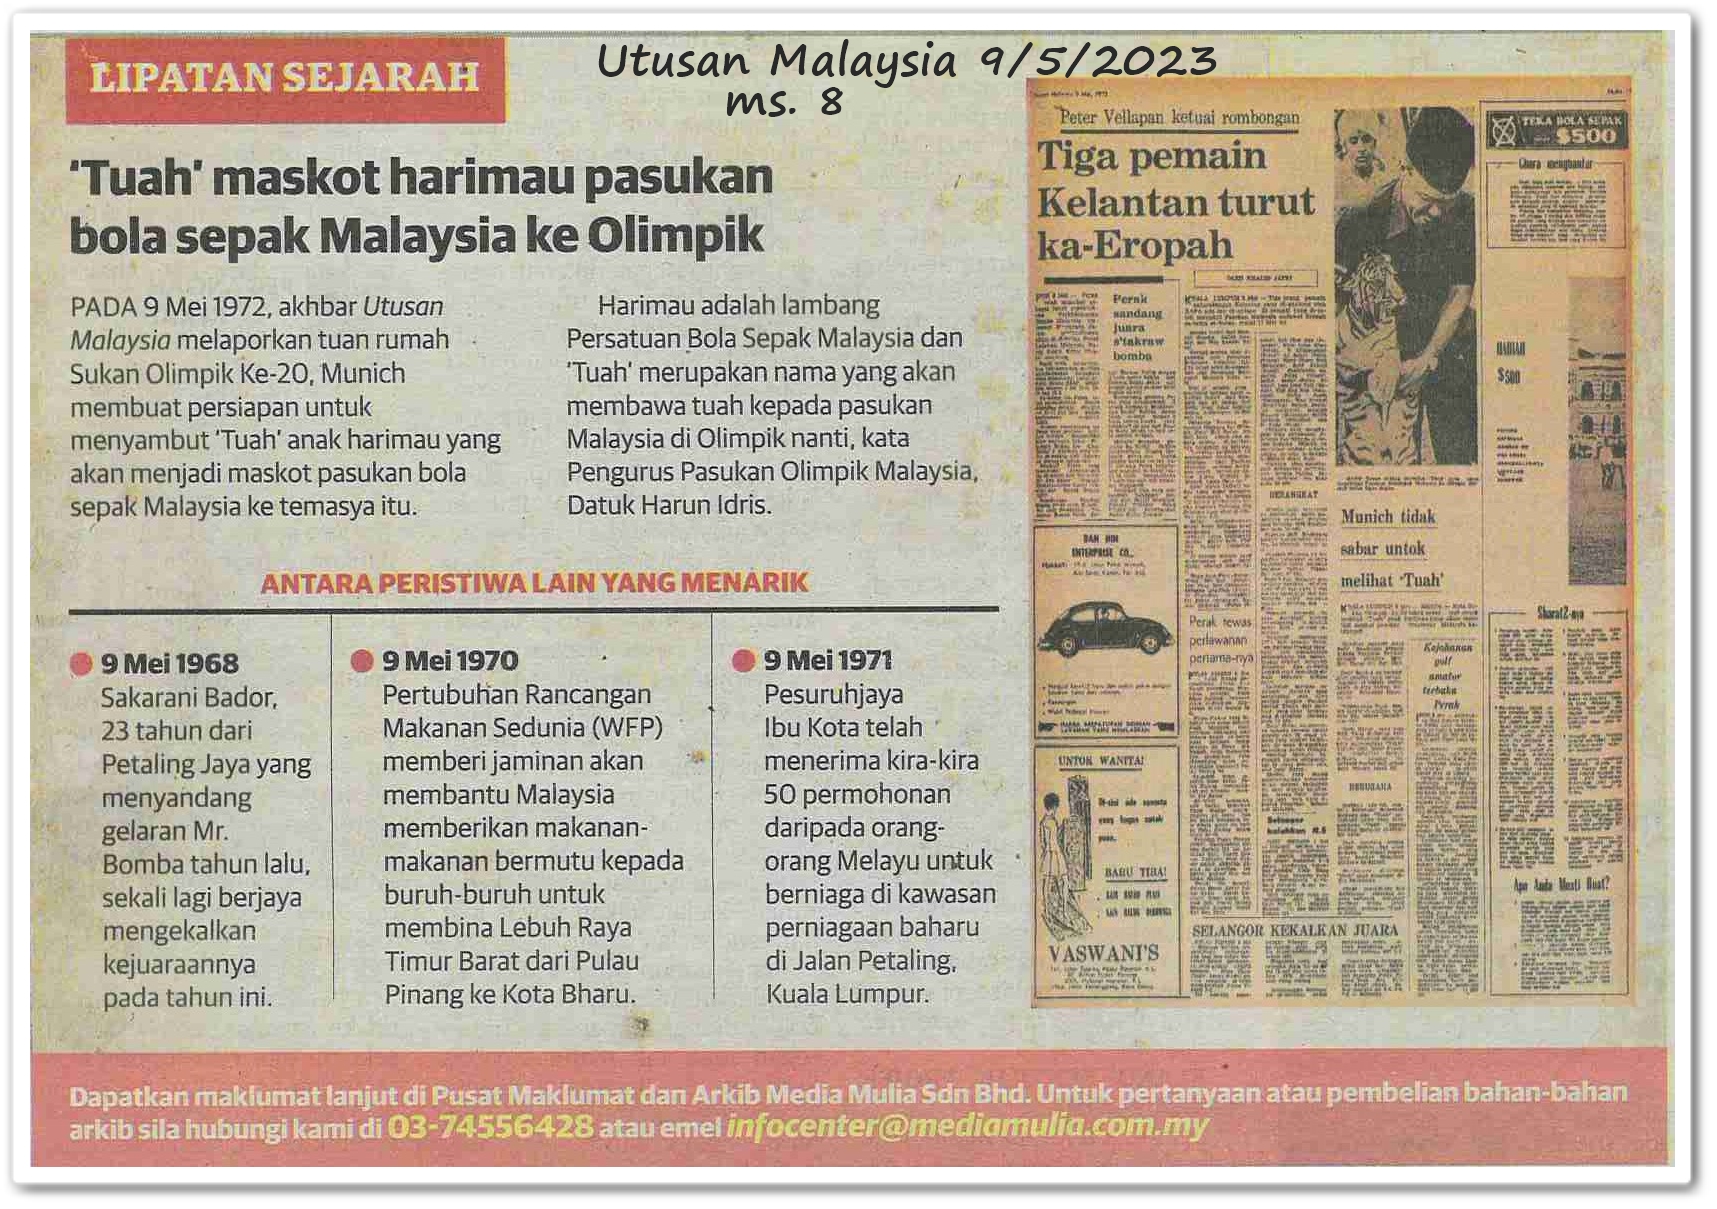 Lipatan sejarah 9 Mei - Keratan akhbar Utusan Malaysia 9 Mei 2023